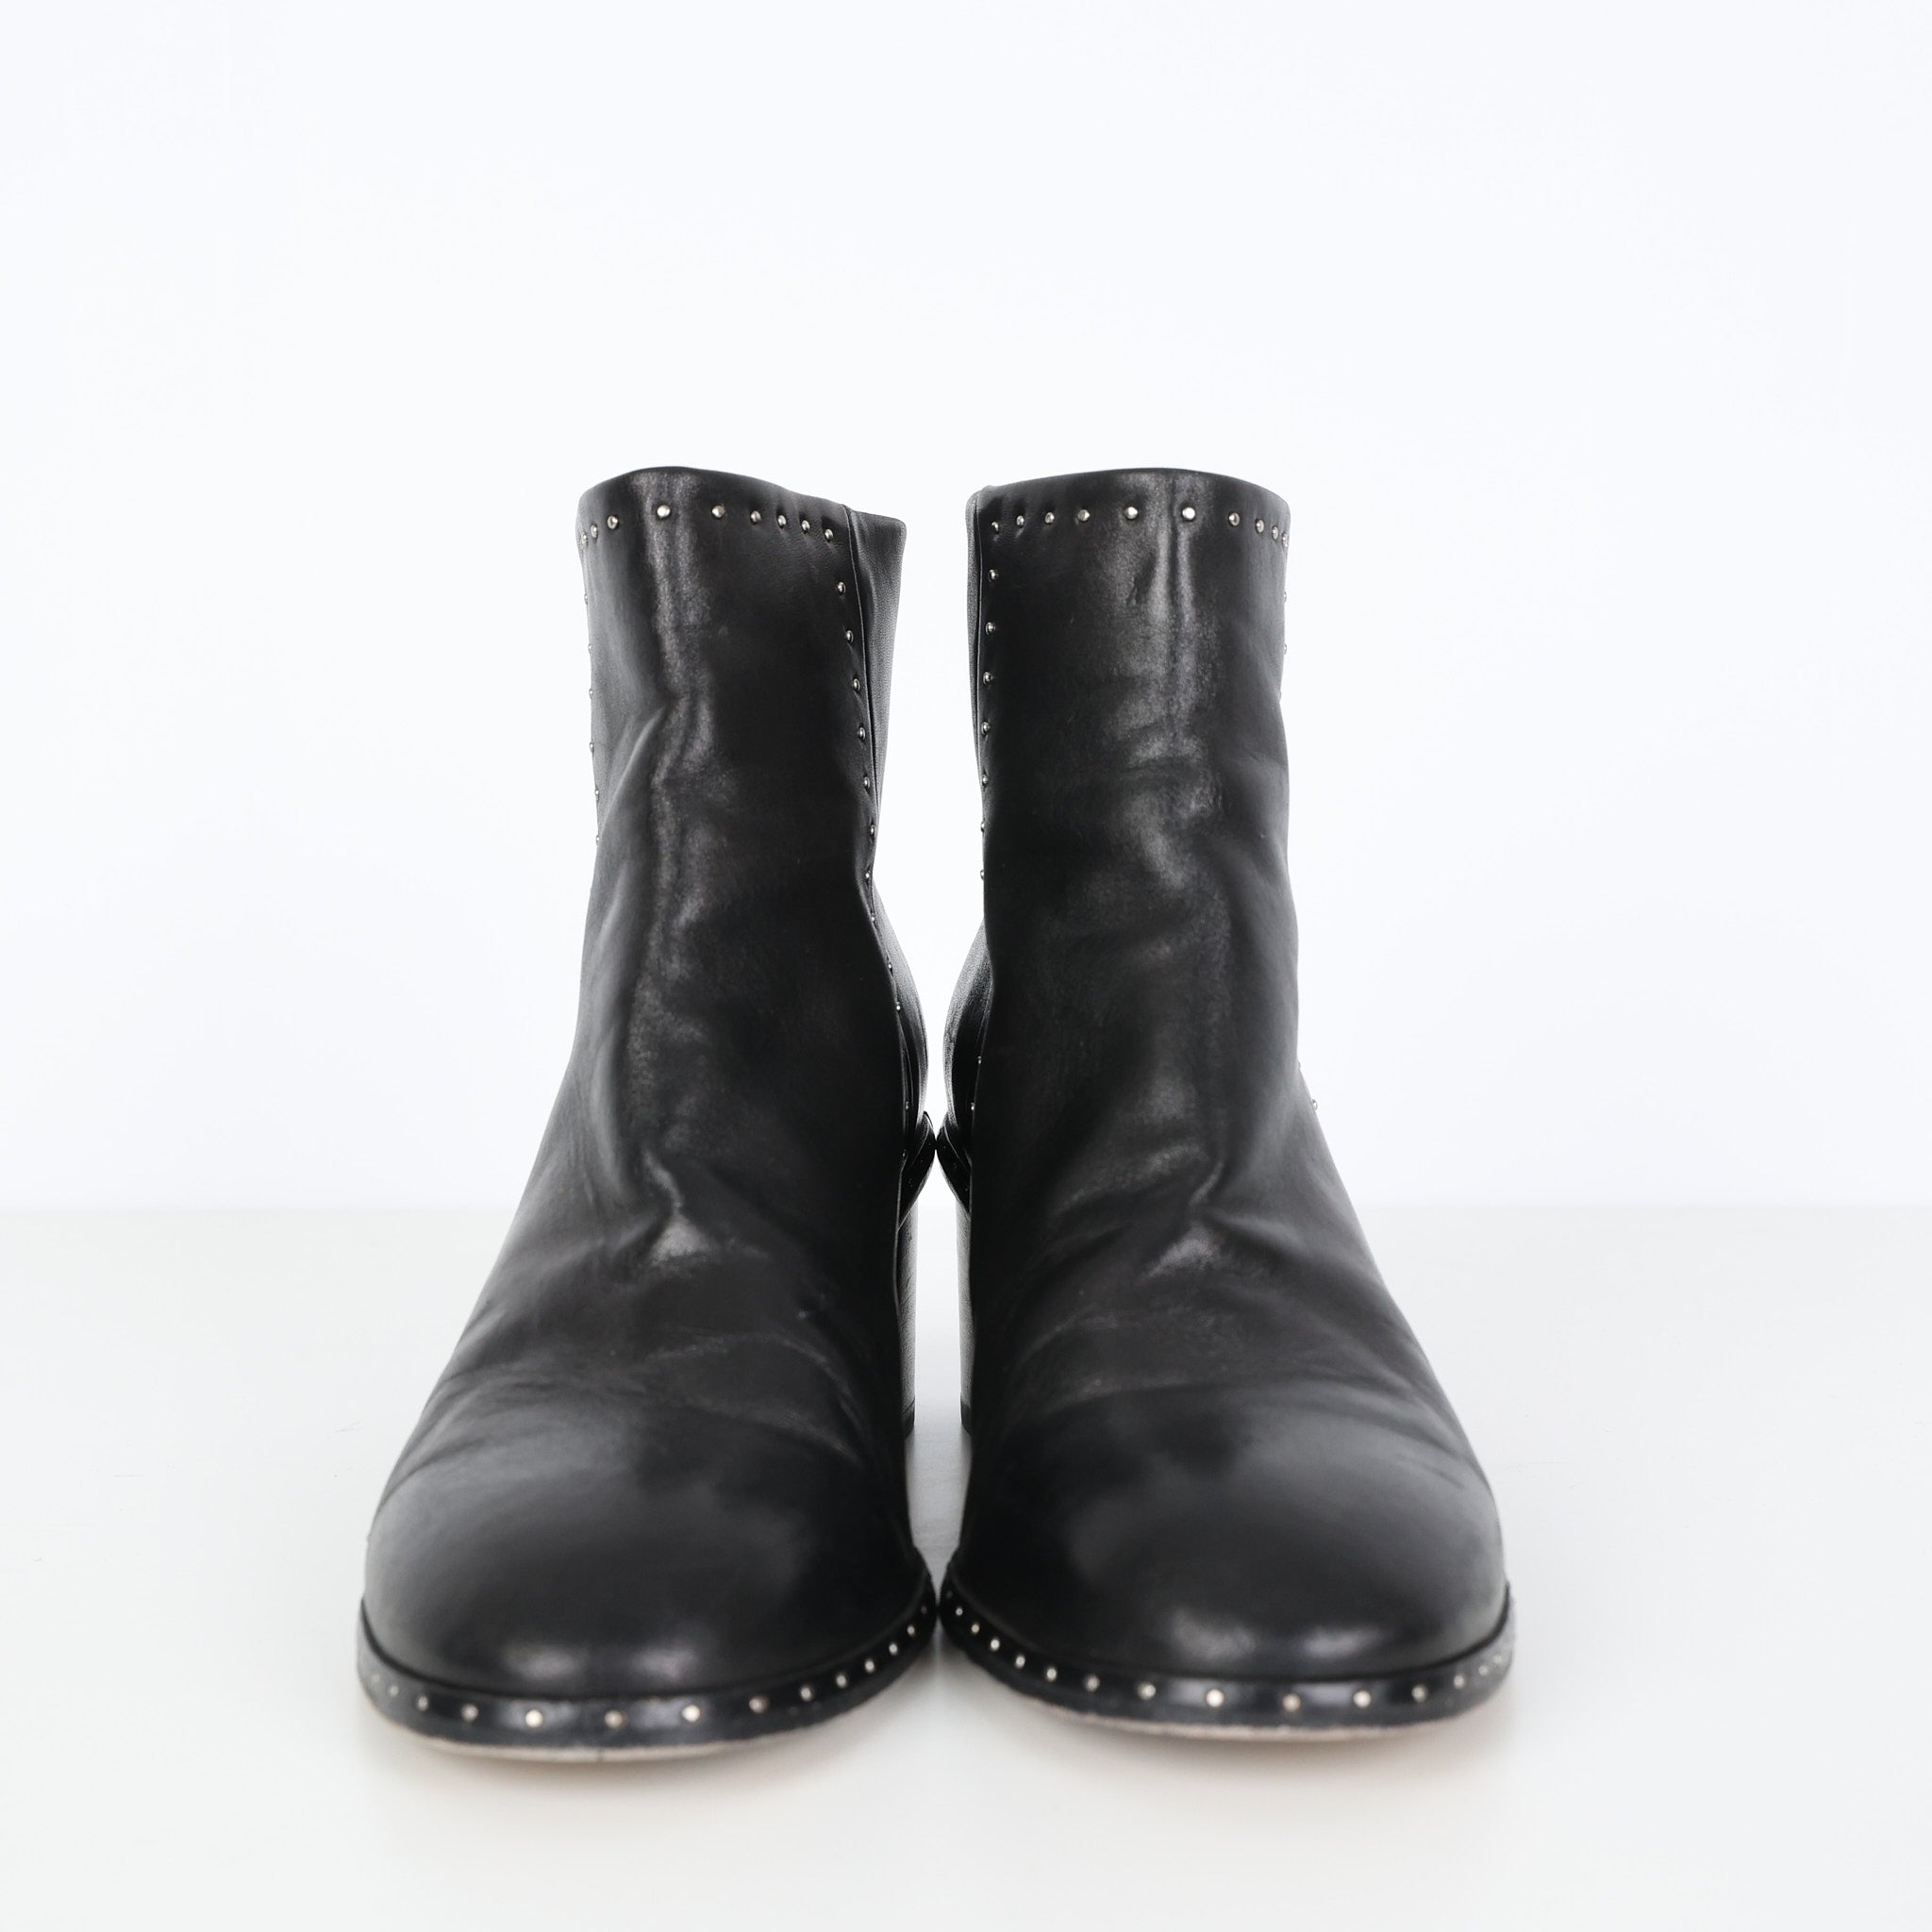 Boots, Shoe Size 38.5